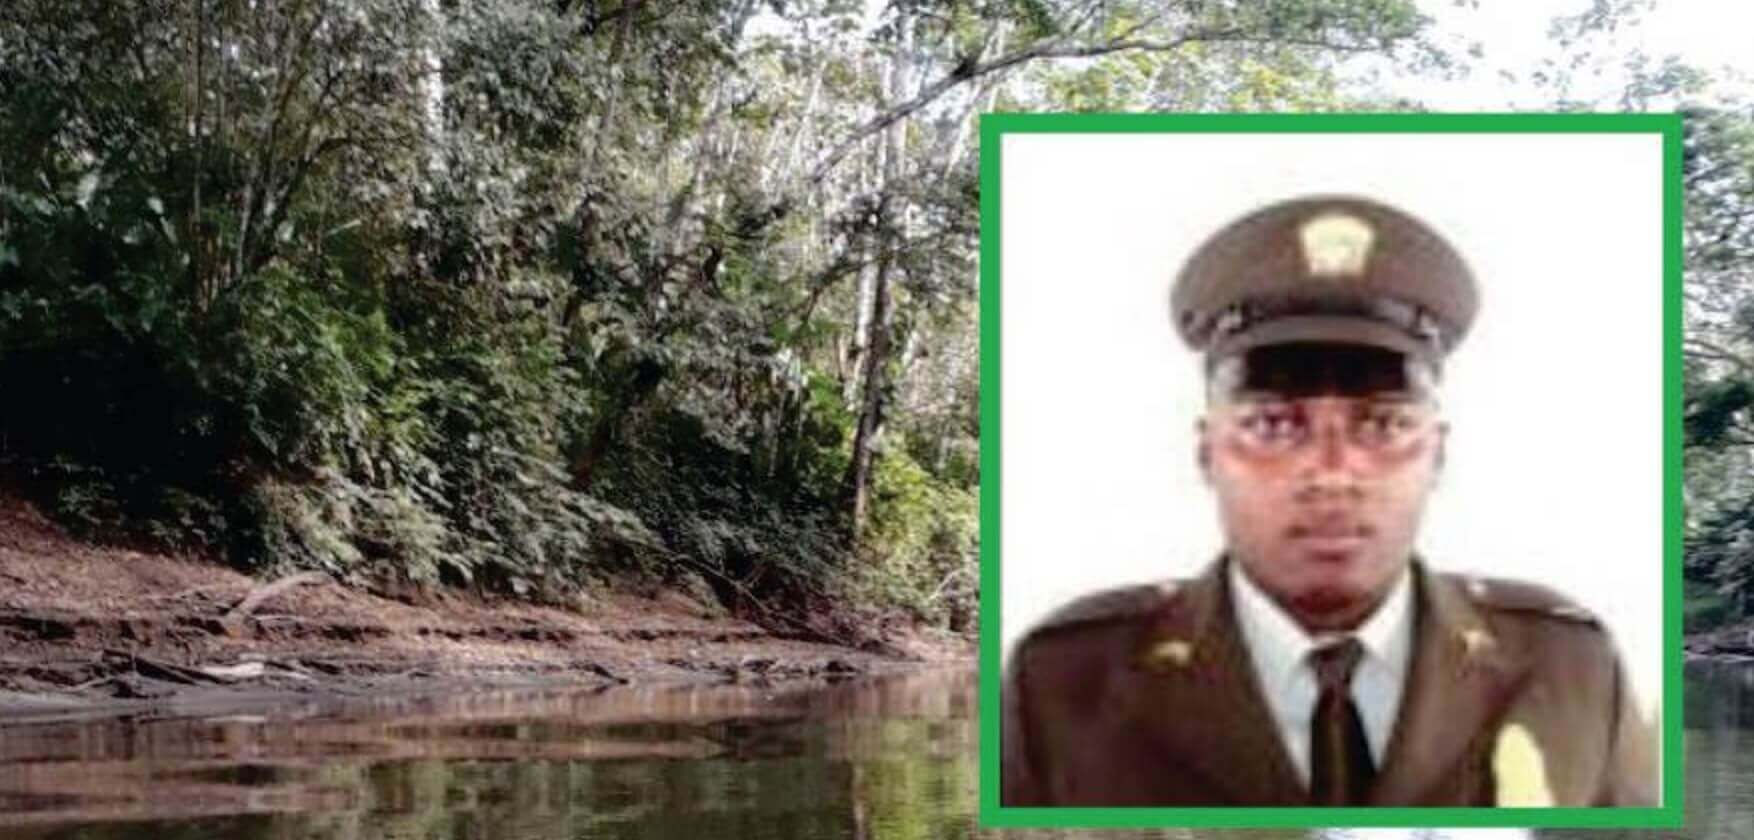 Policía asesinado en Chocó